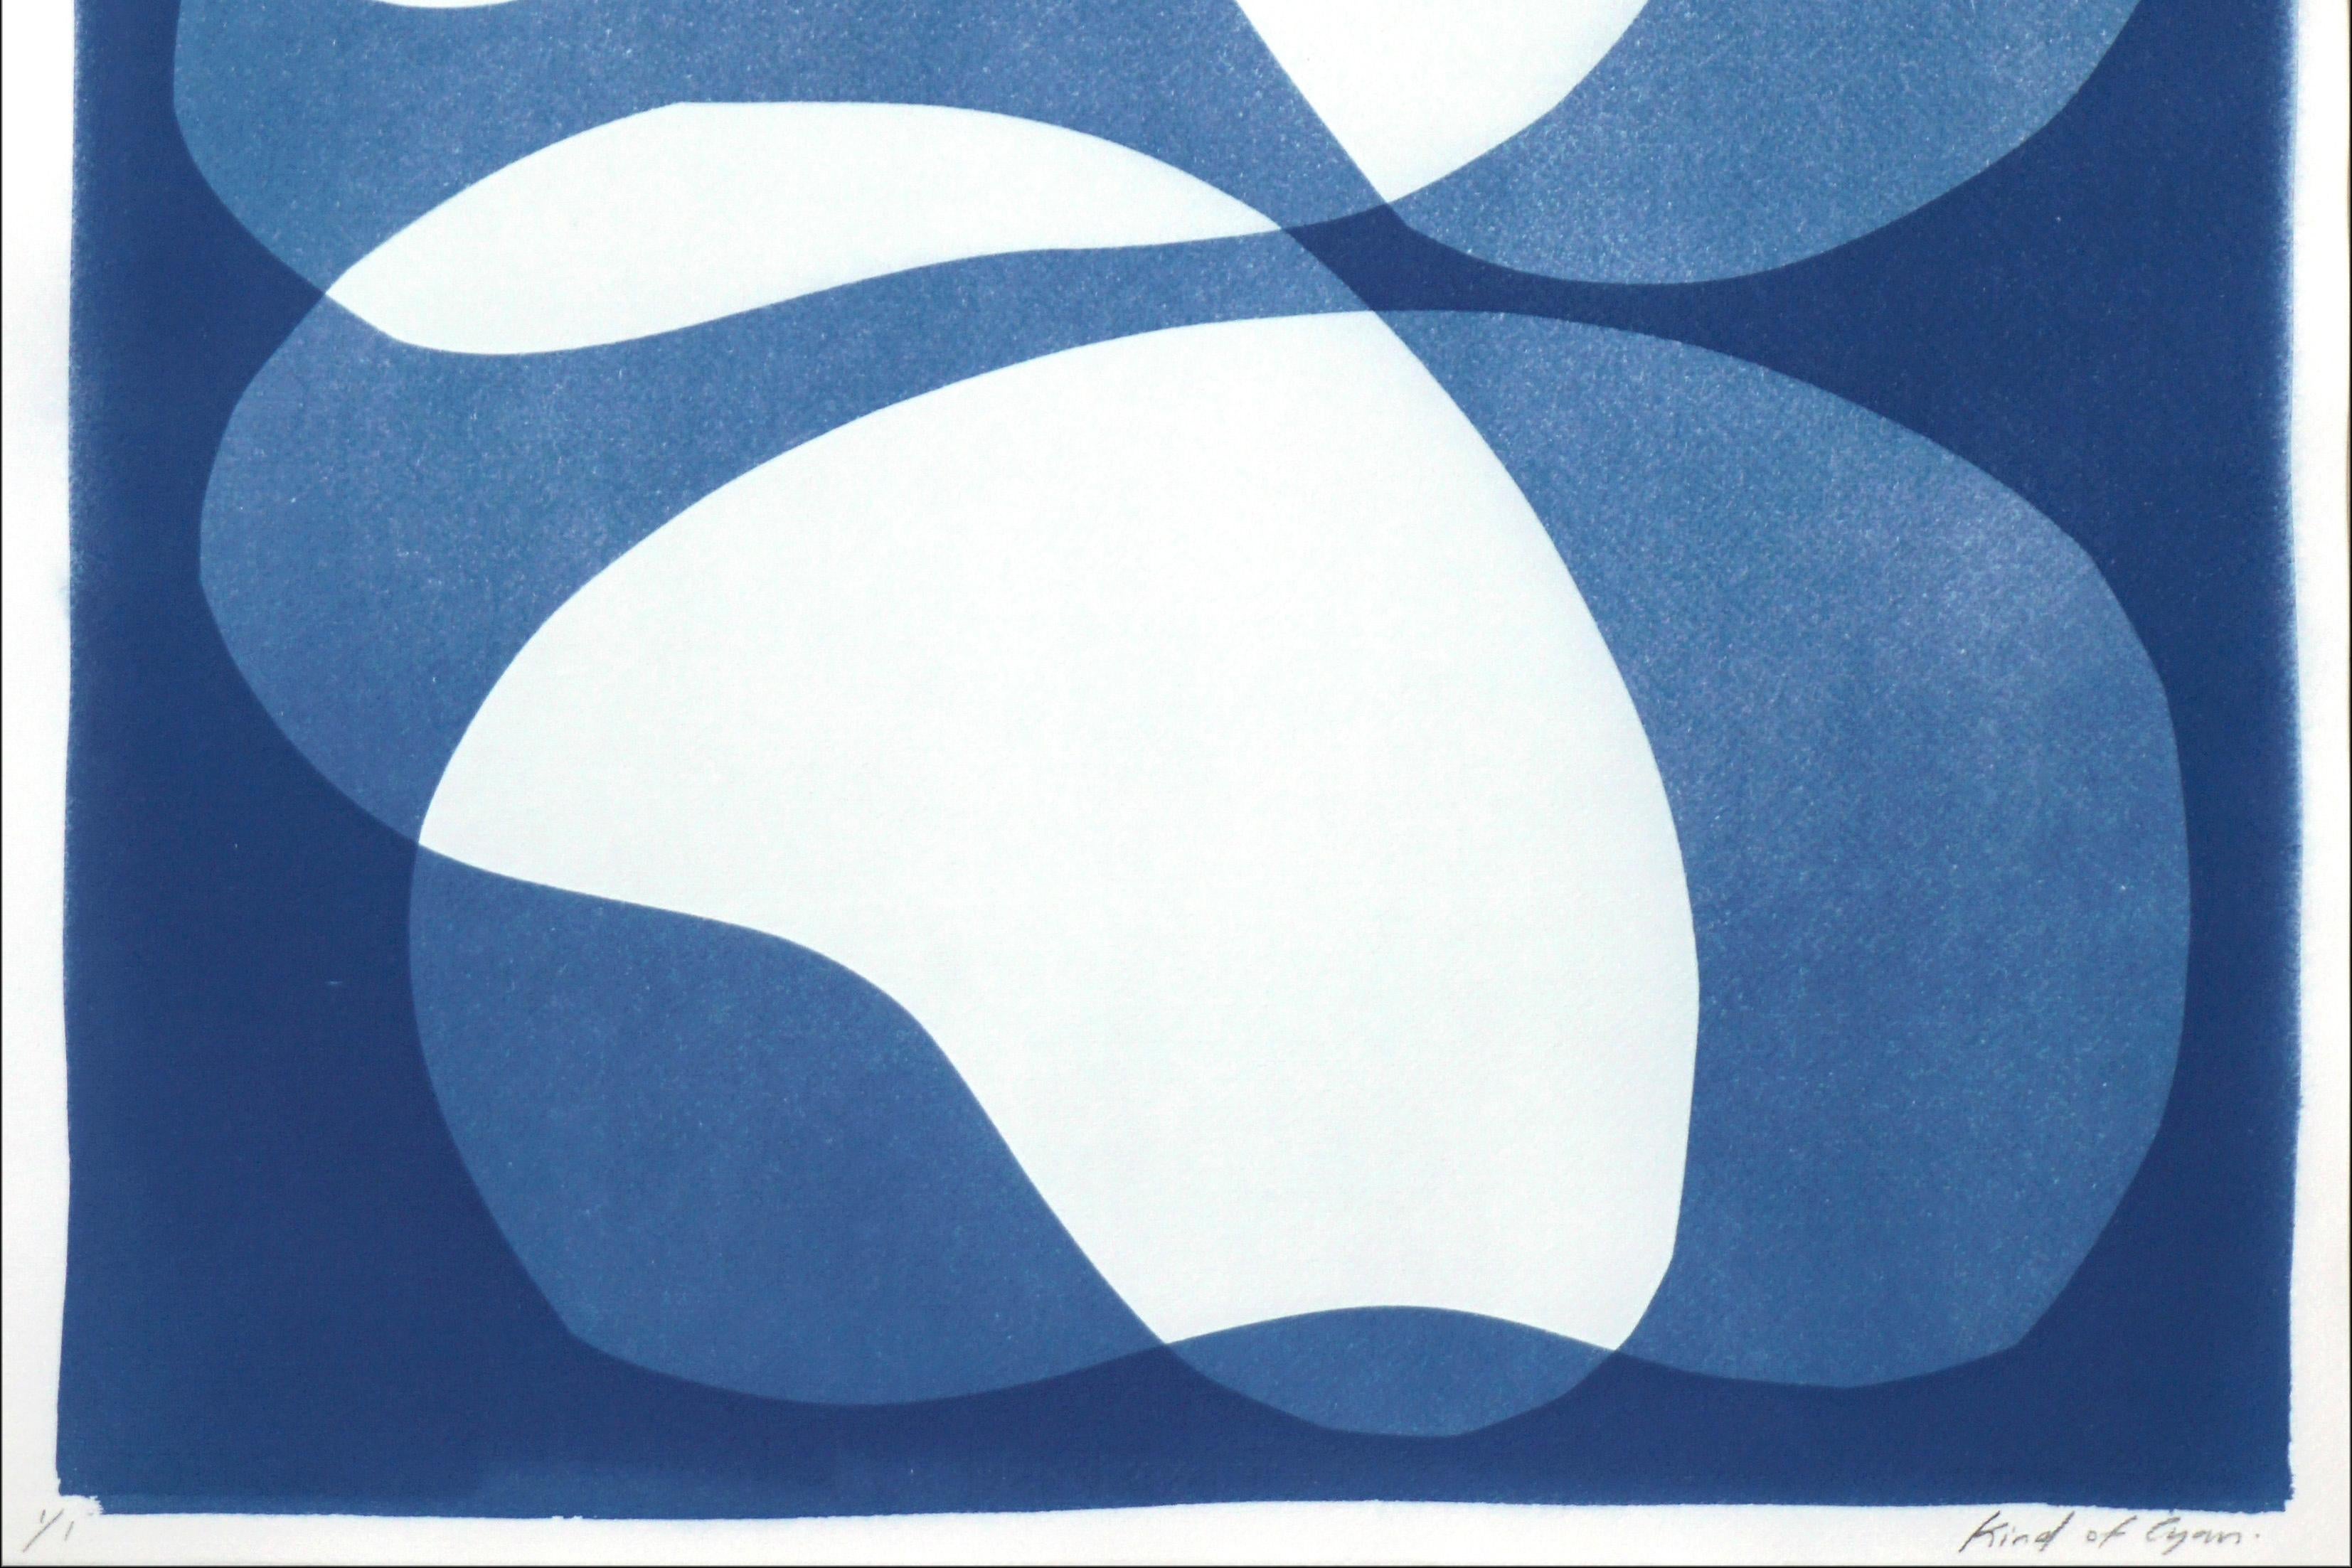 Il s'agit d'un cyanotype unique exclusif, imprimé à la main, qui s'inspire des formes modernes du milieu du siècle dernier.
Il a été réalisé en superposant des papiers découpés et différentes expositions à la lumière UV. 

Détails :
+ Titre :